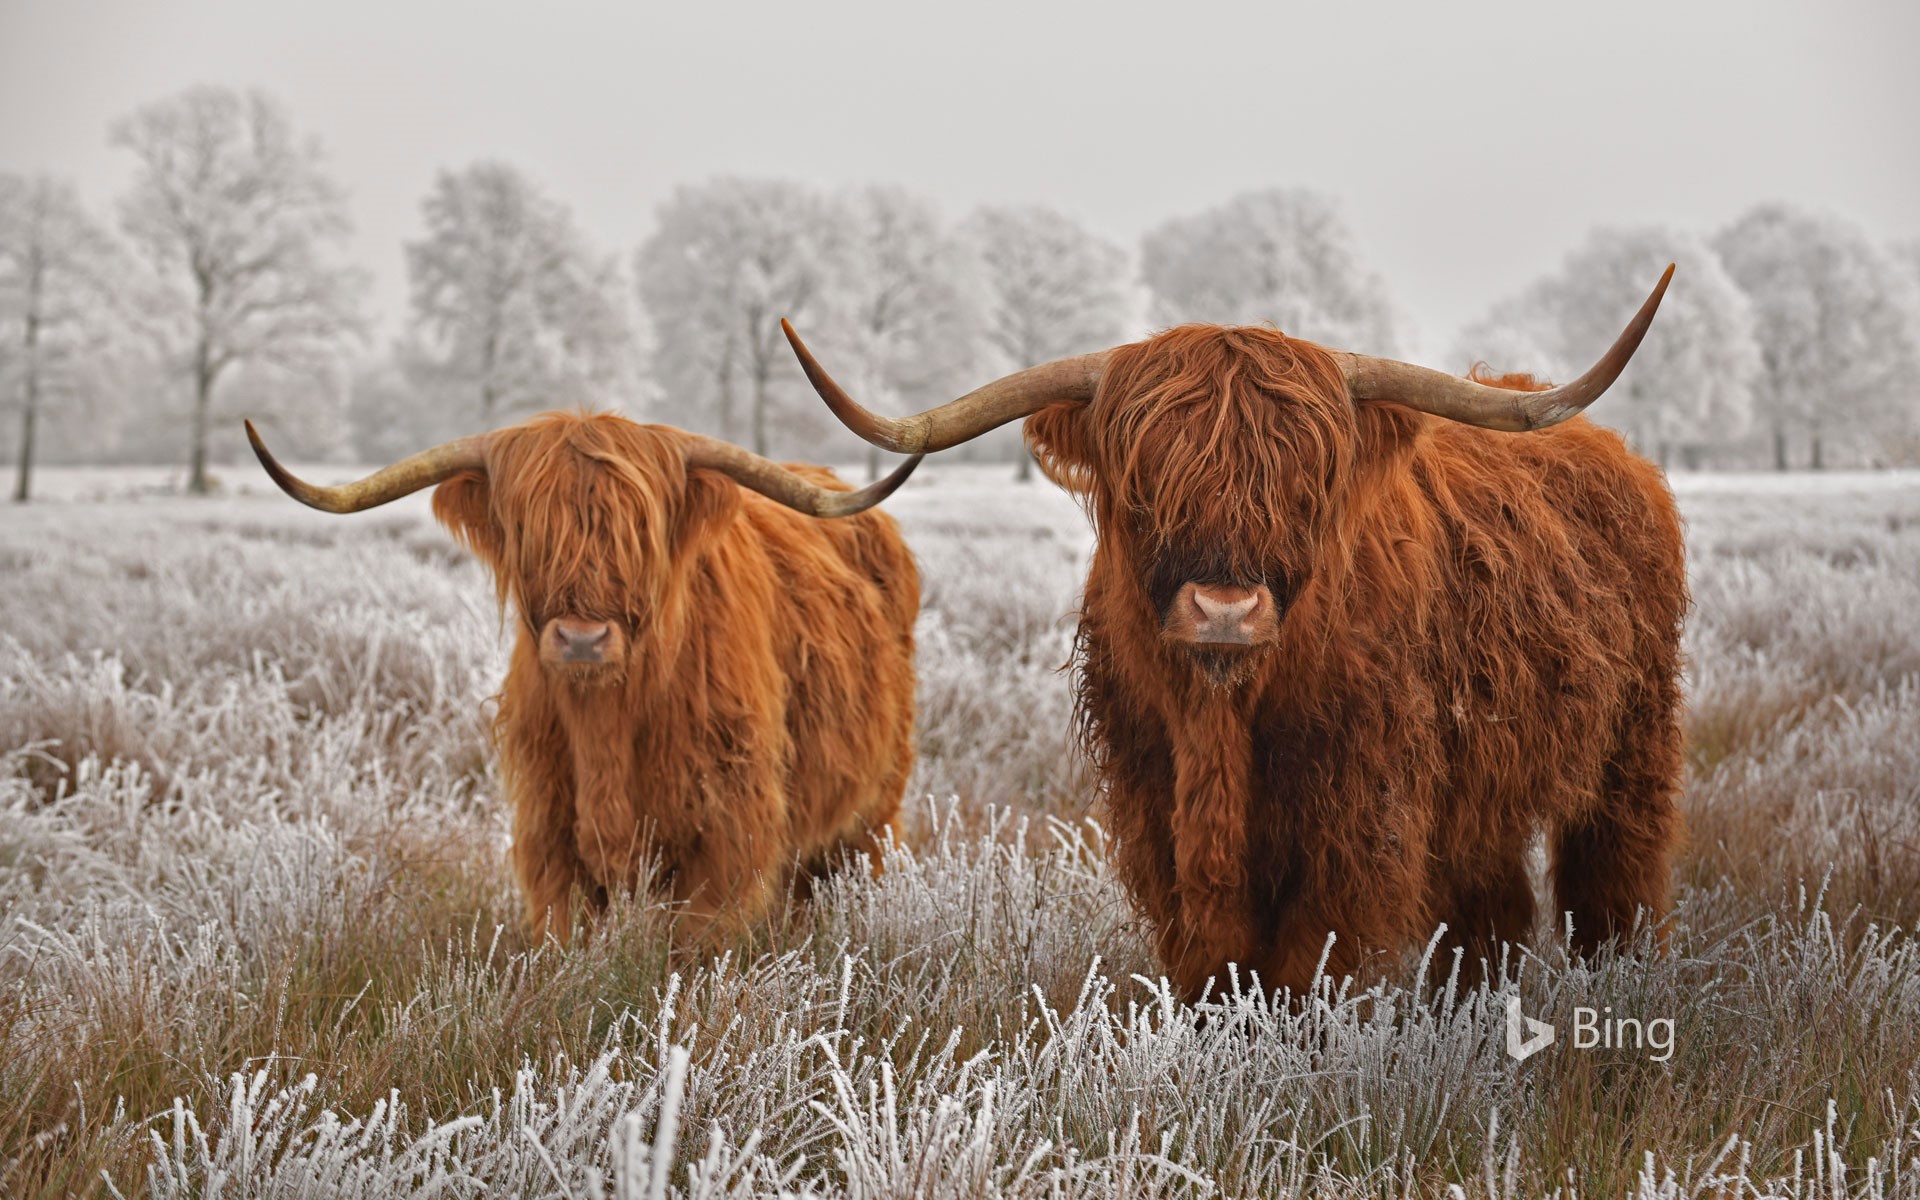 Highland cattle in Drenthe province, Netherlands